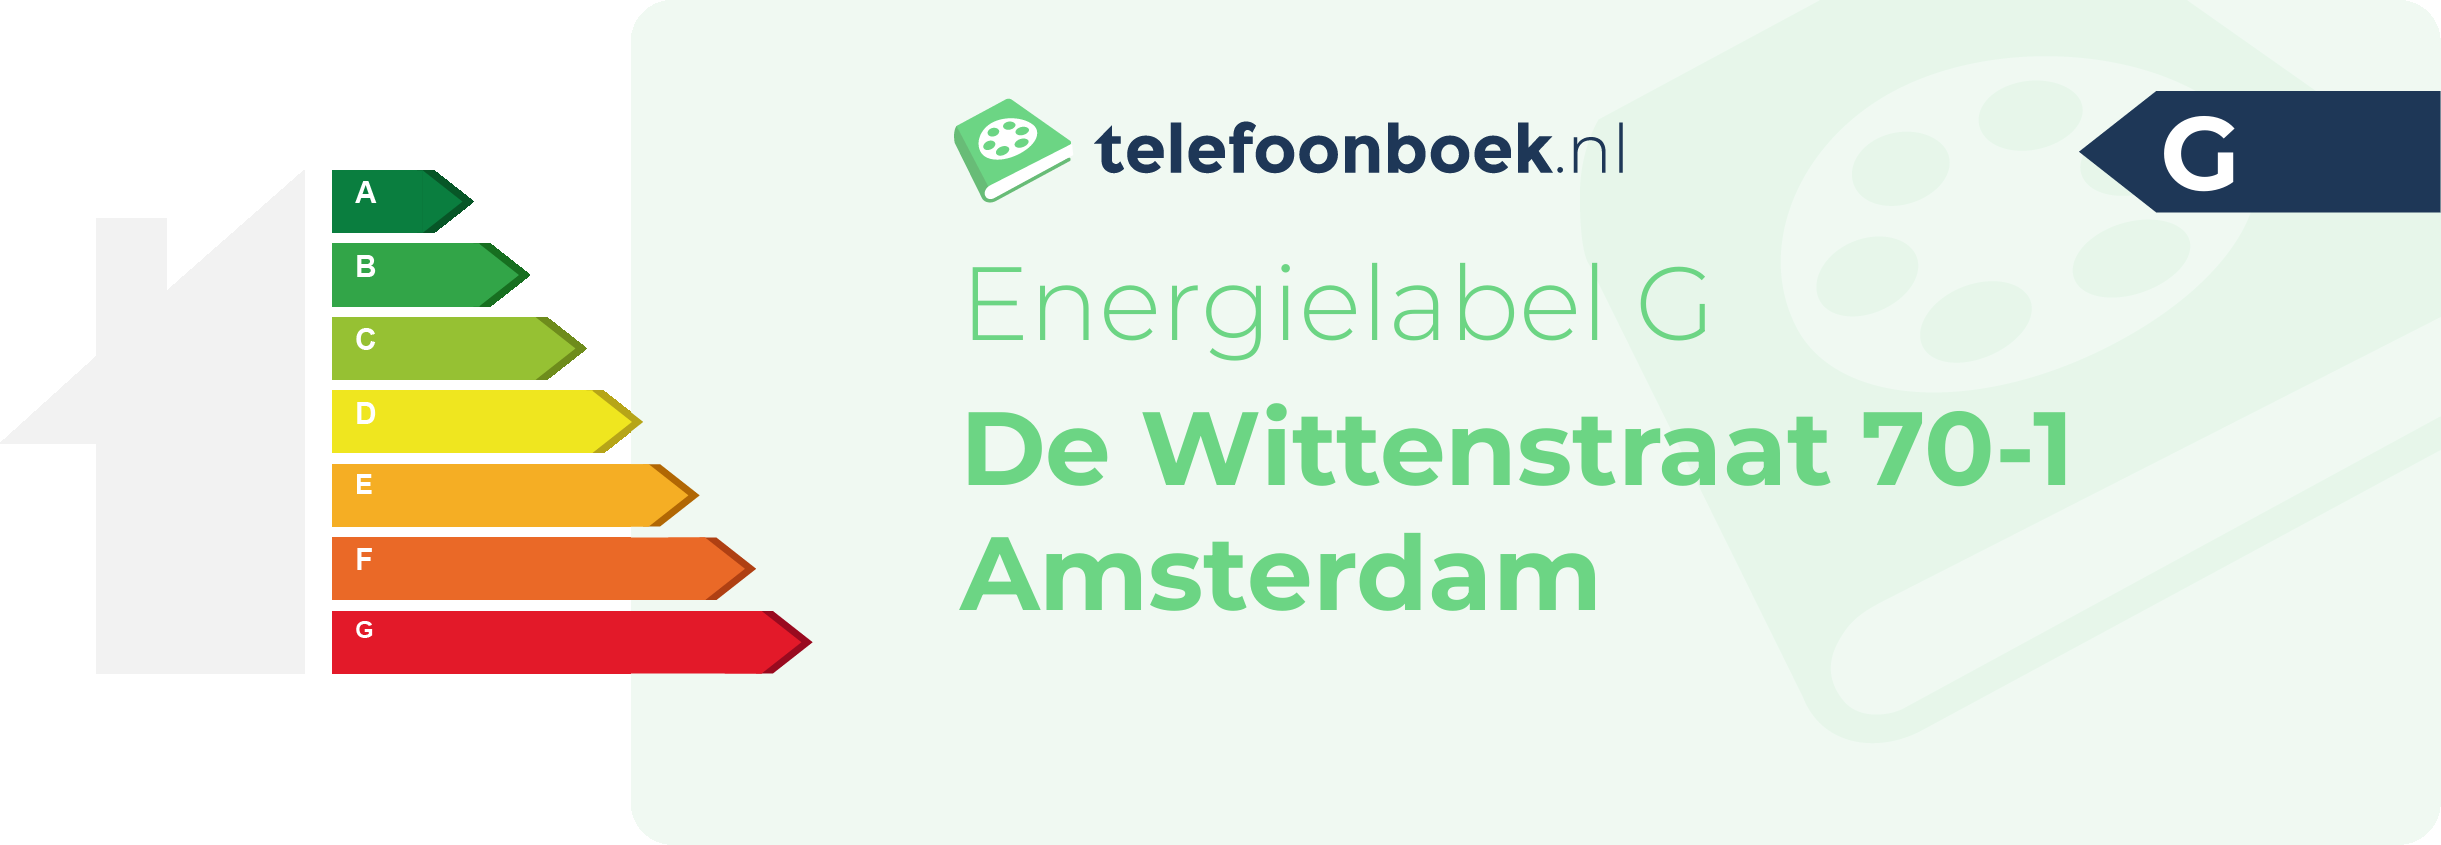 Energielabel De Wittenstraat 70-1 Amsterdam